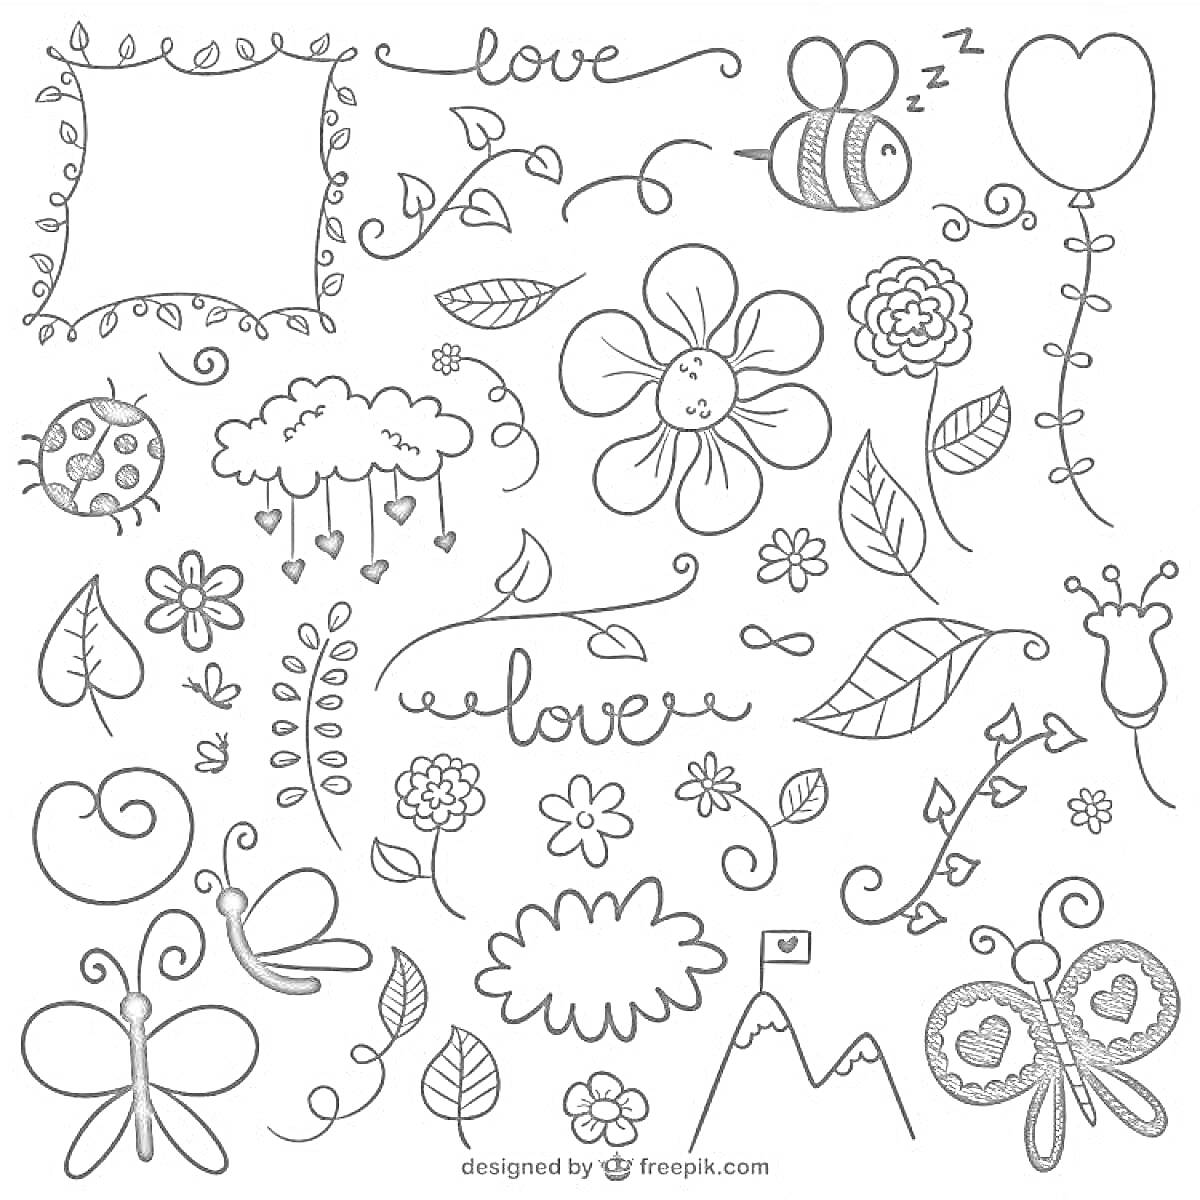 Раскраска Каракули с цветами, бабочками, пчелами, облаками, растениями и сердечками